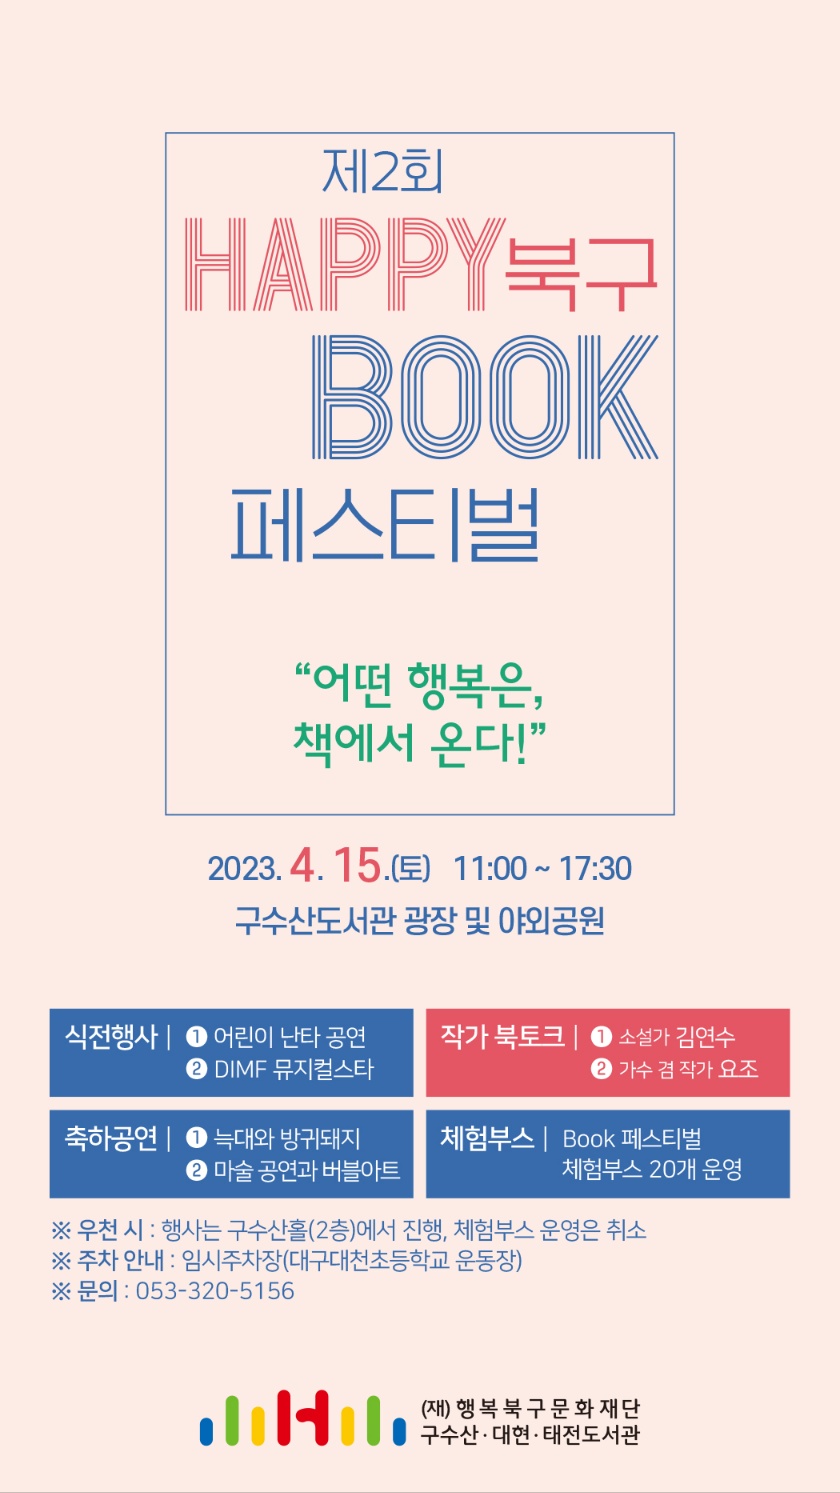 [행사안내] 제2회 HAPPY 북구 BOOK 페스티벌 개최